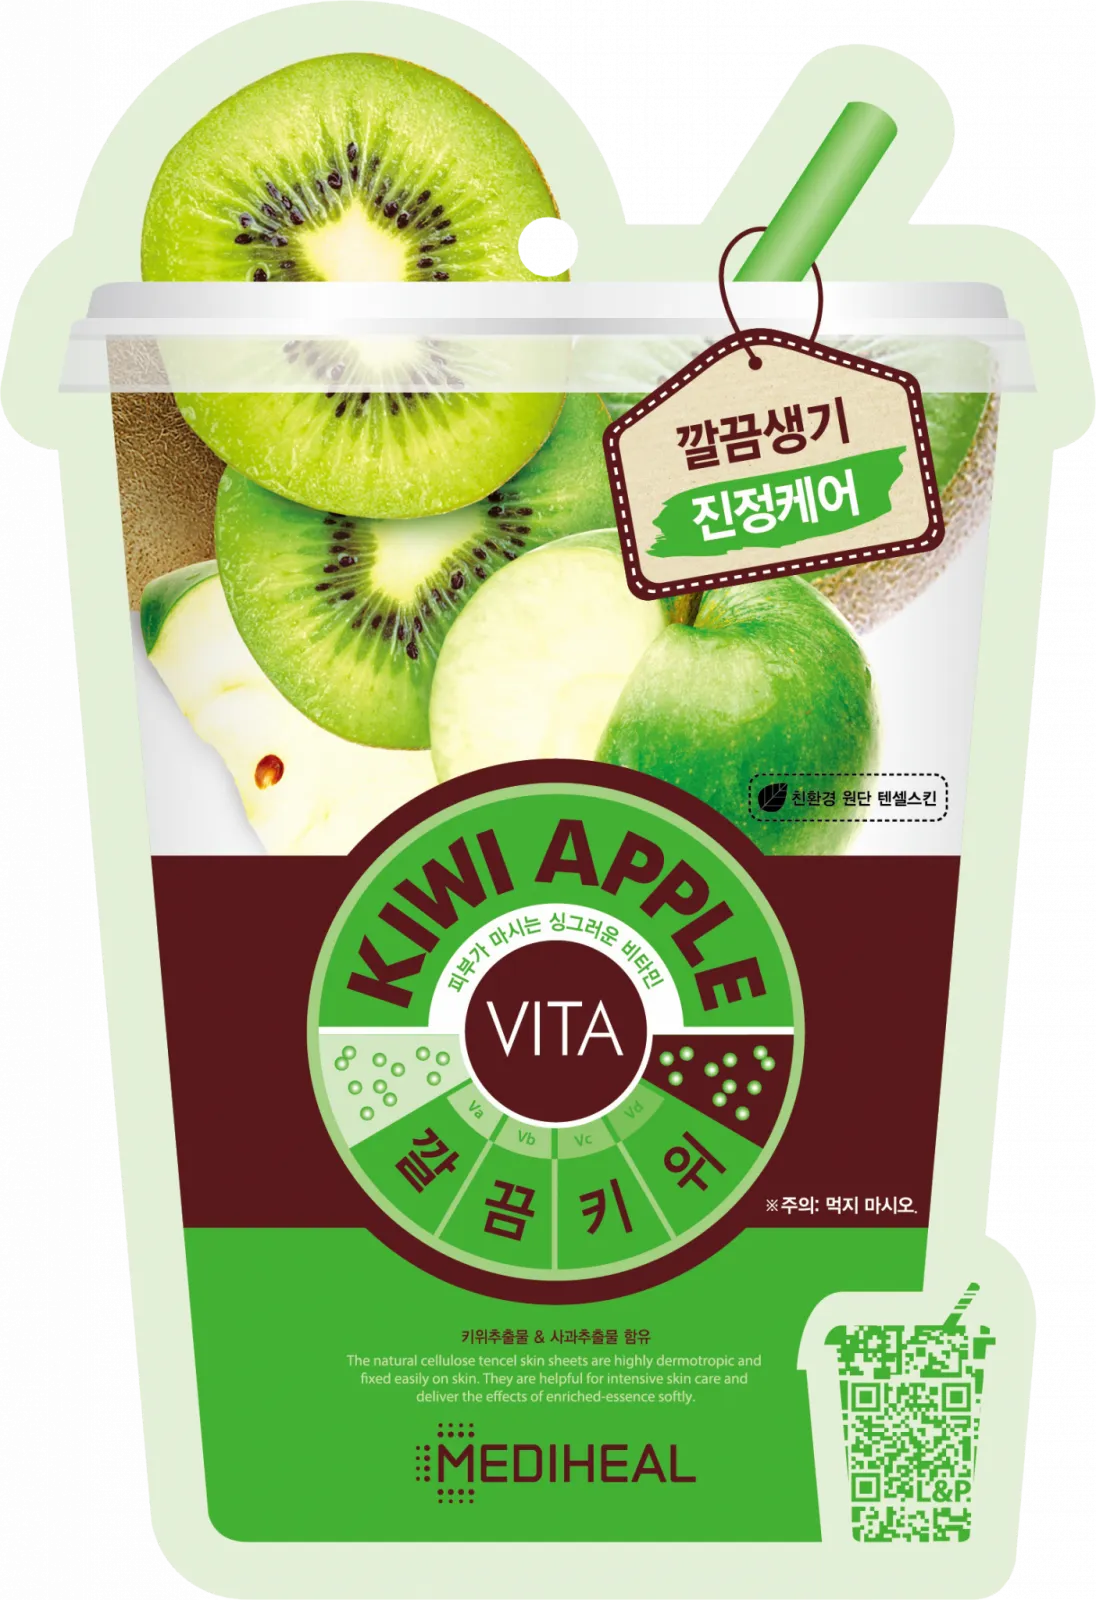 Mediheal Vita Kiwi Apple maska w płachcie z tencelu odświeżająca, 20 ml